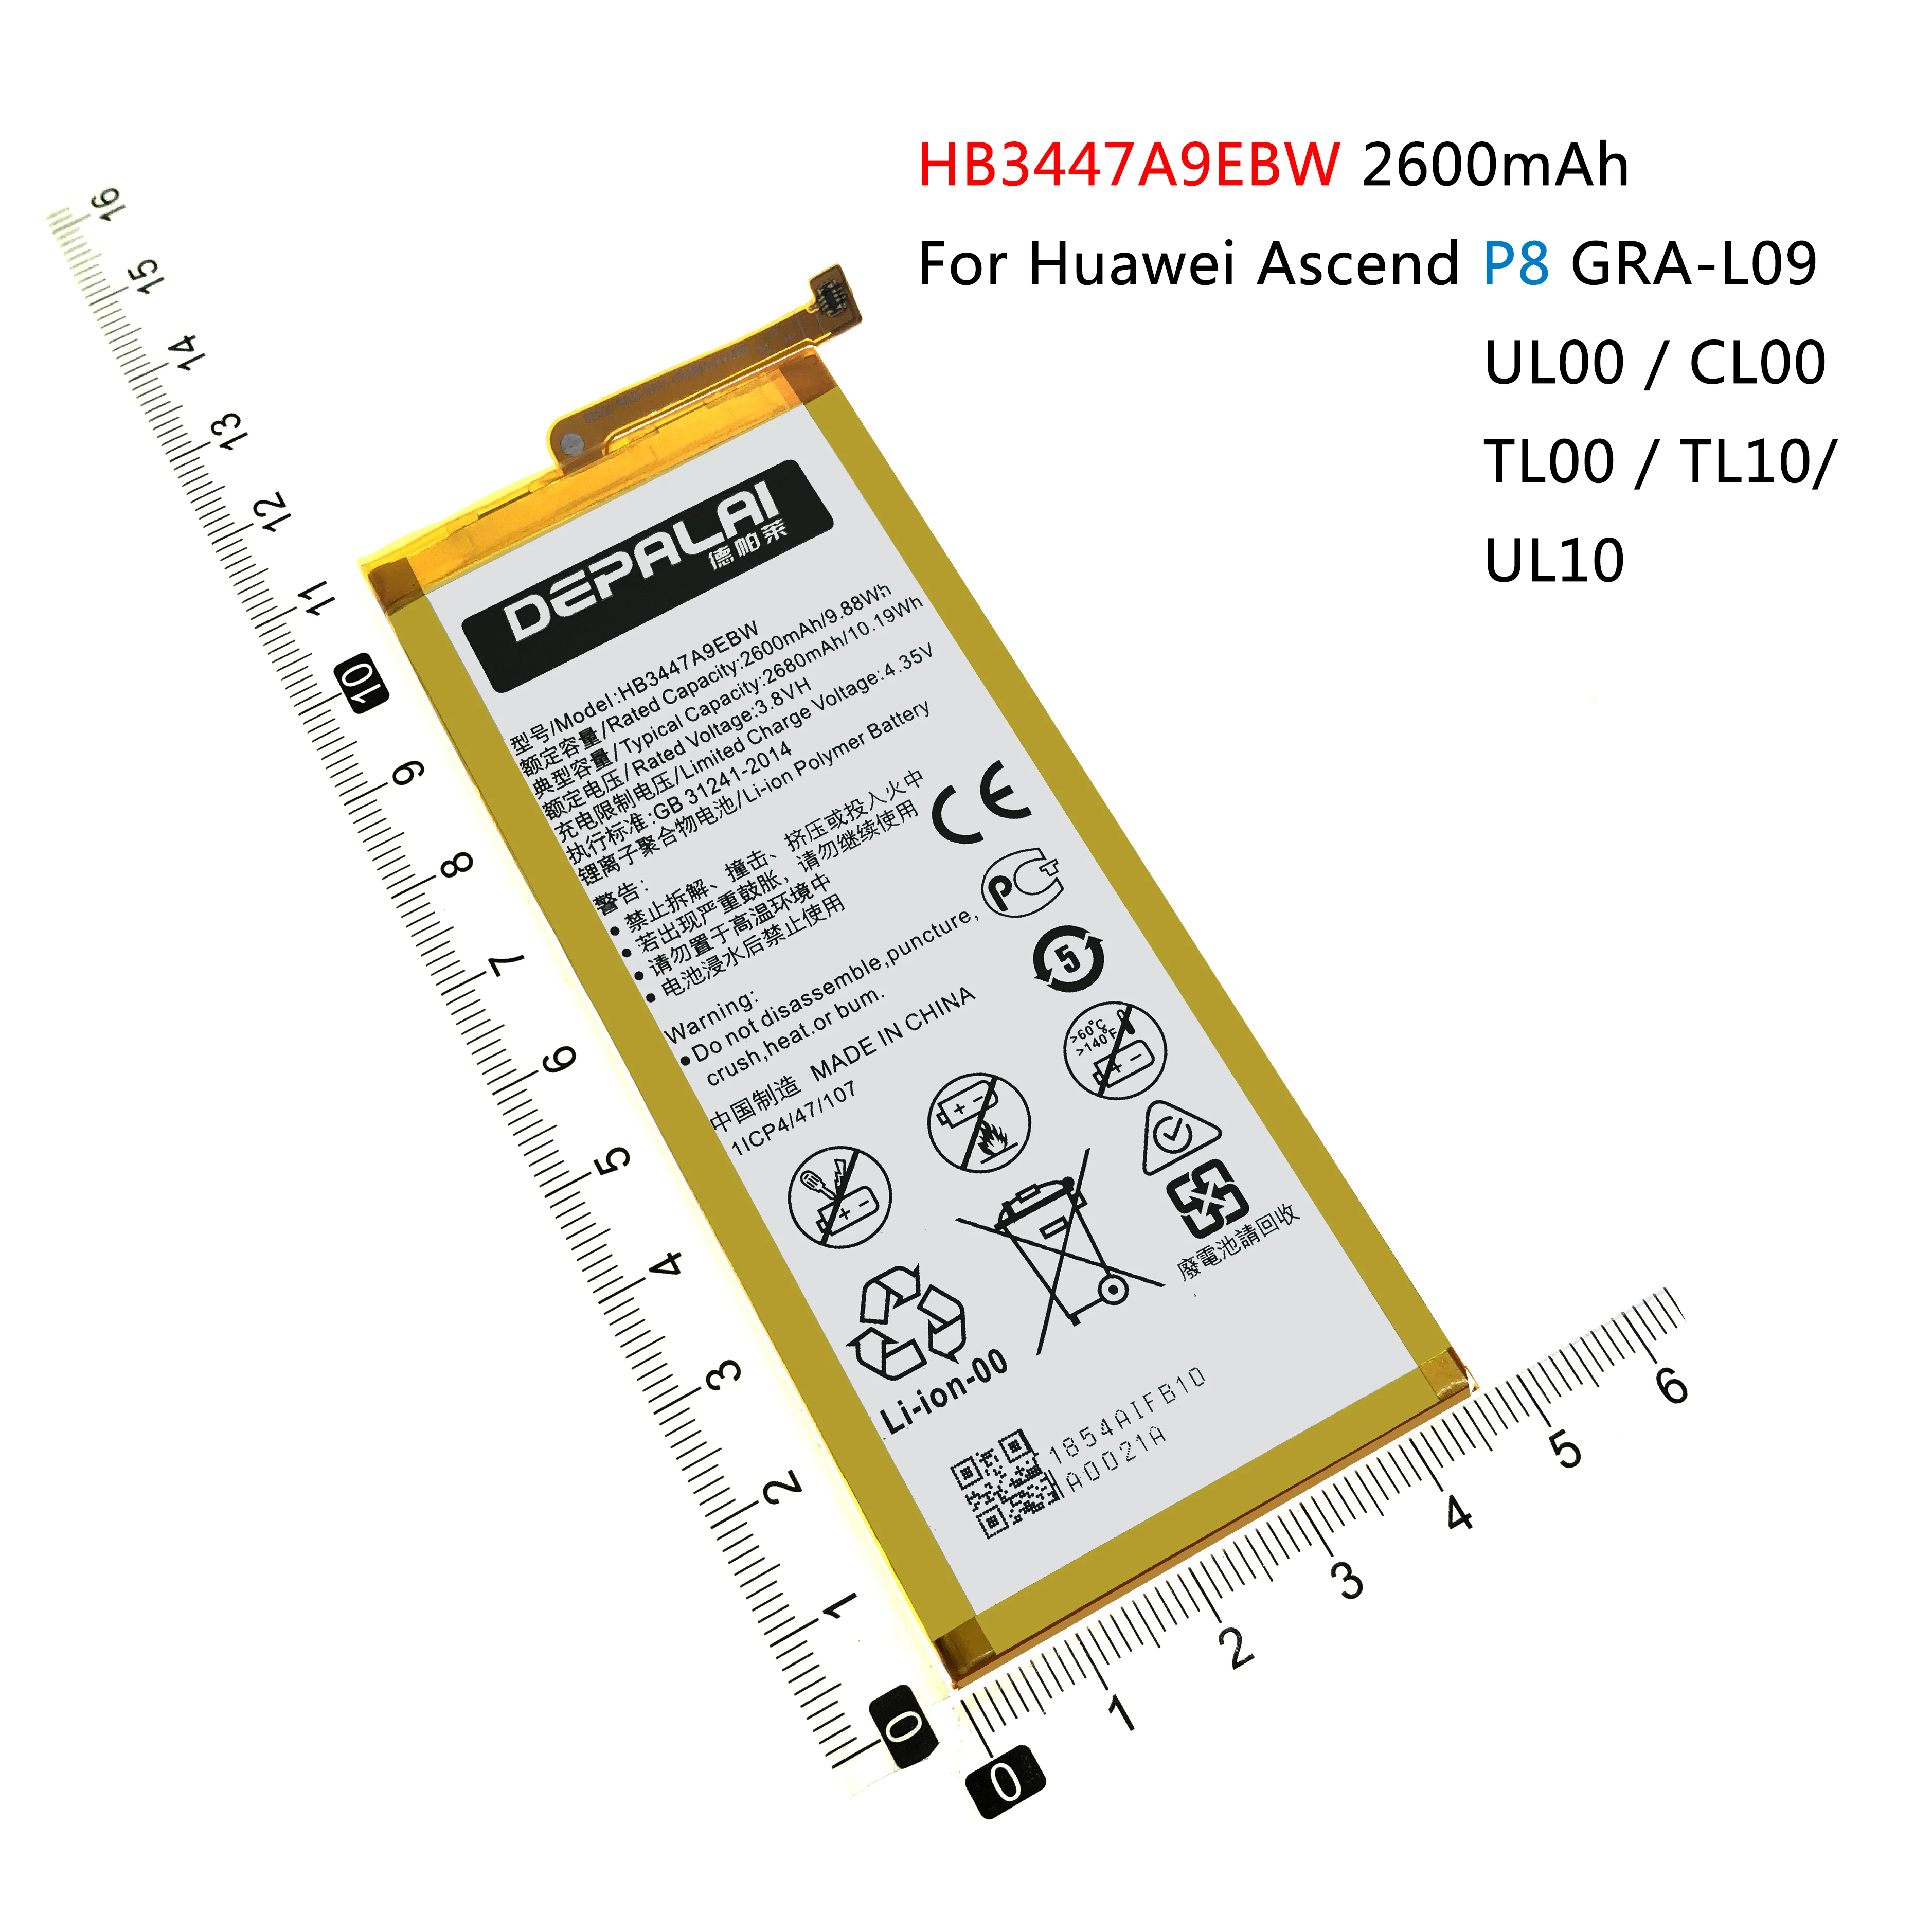 

HB3742A0EBC HB3543B4EBW HB3447A9EBW HB3742A0EZC+ Battery For Huawei P8 Lite Ascend P8 GRA-L09 P7 L07 L09 L00 L10 L05 P6 G6 G620